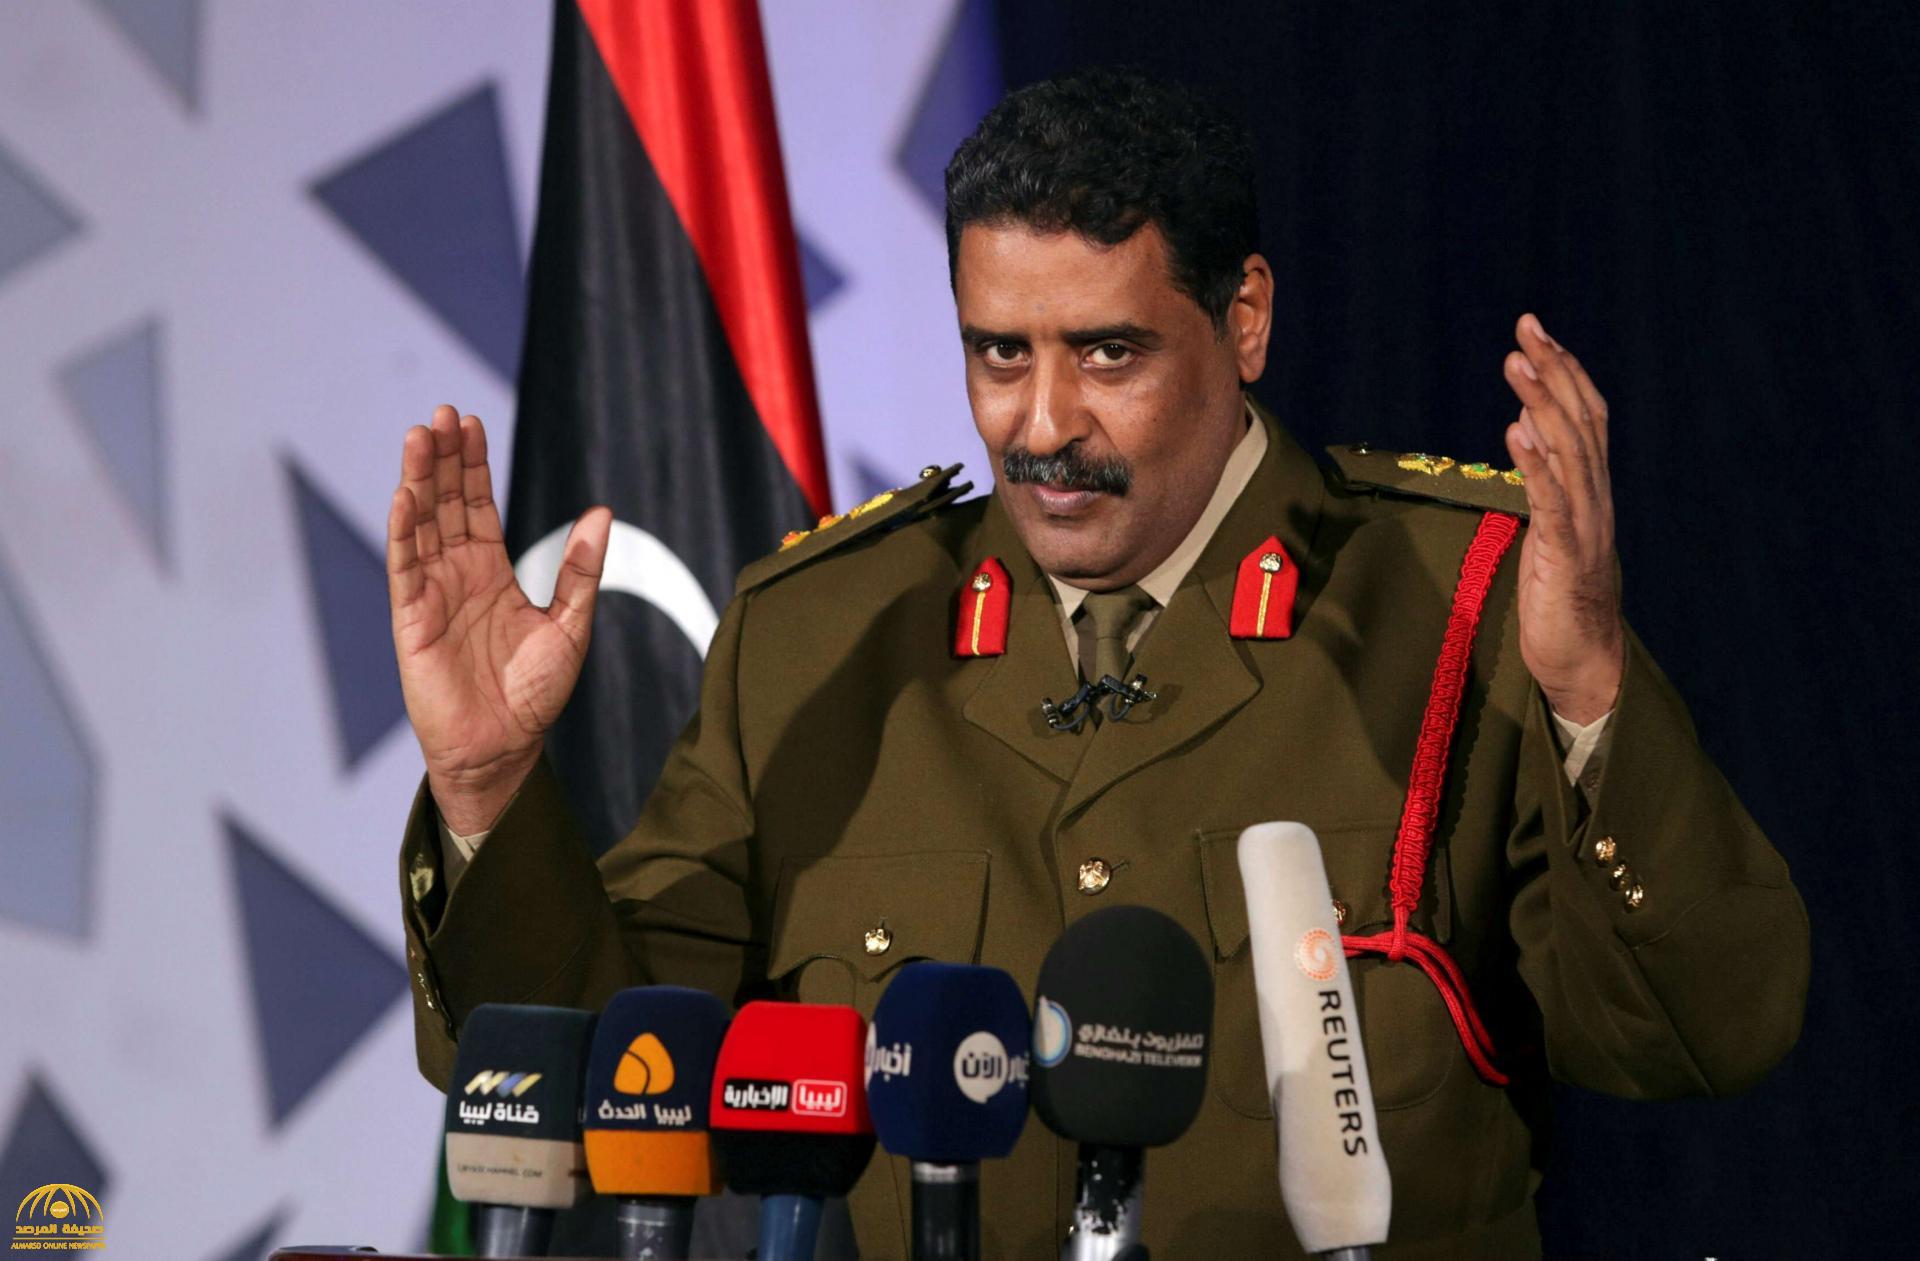 المتحدث باسم "الجيش الوطني الليبي": هناك دول خذلتنا